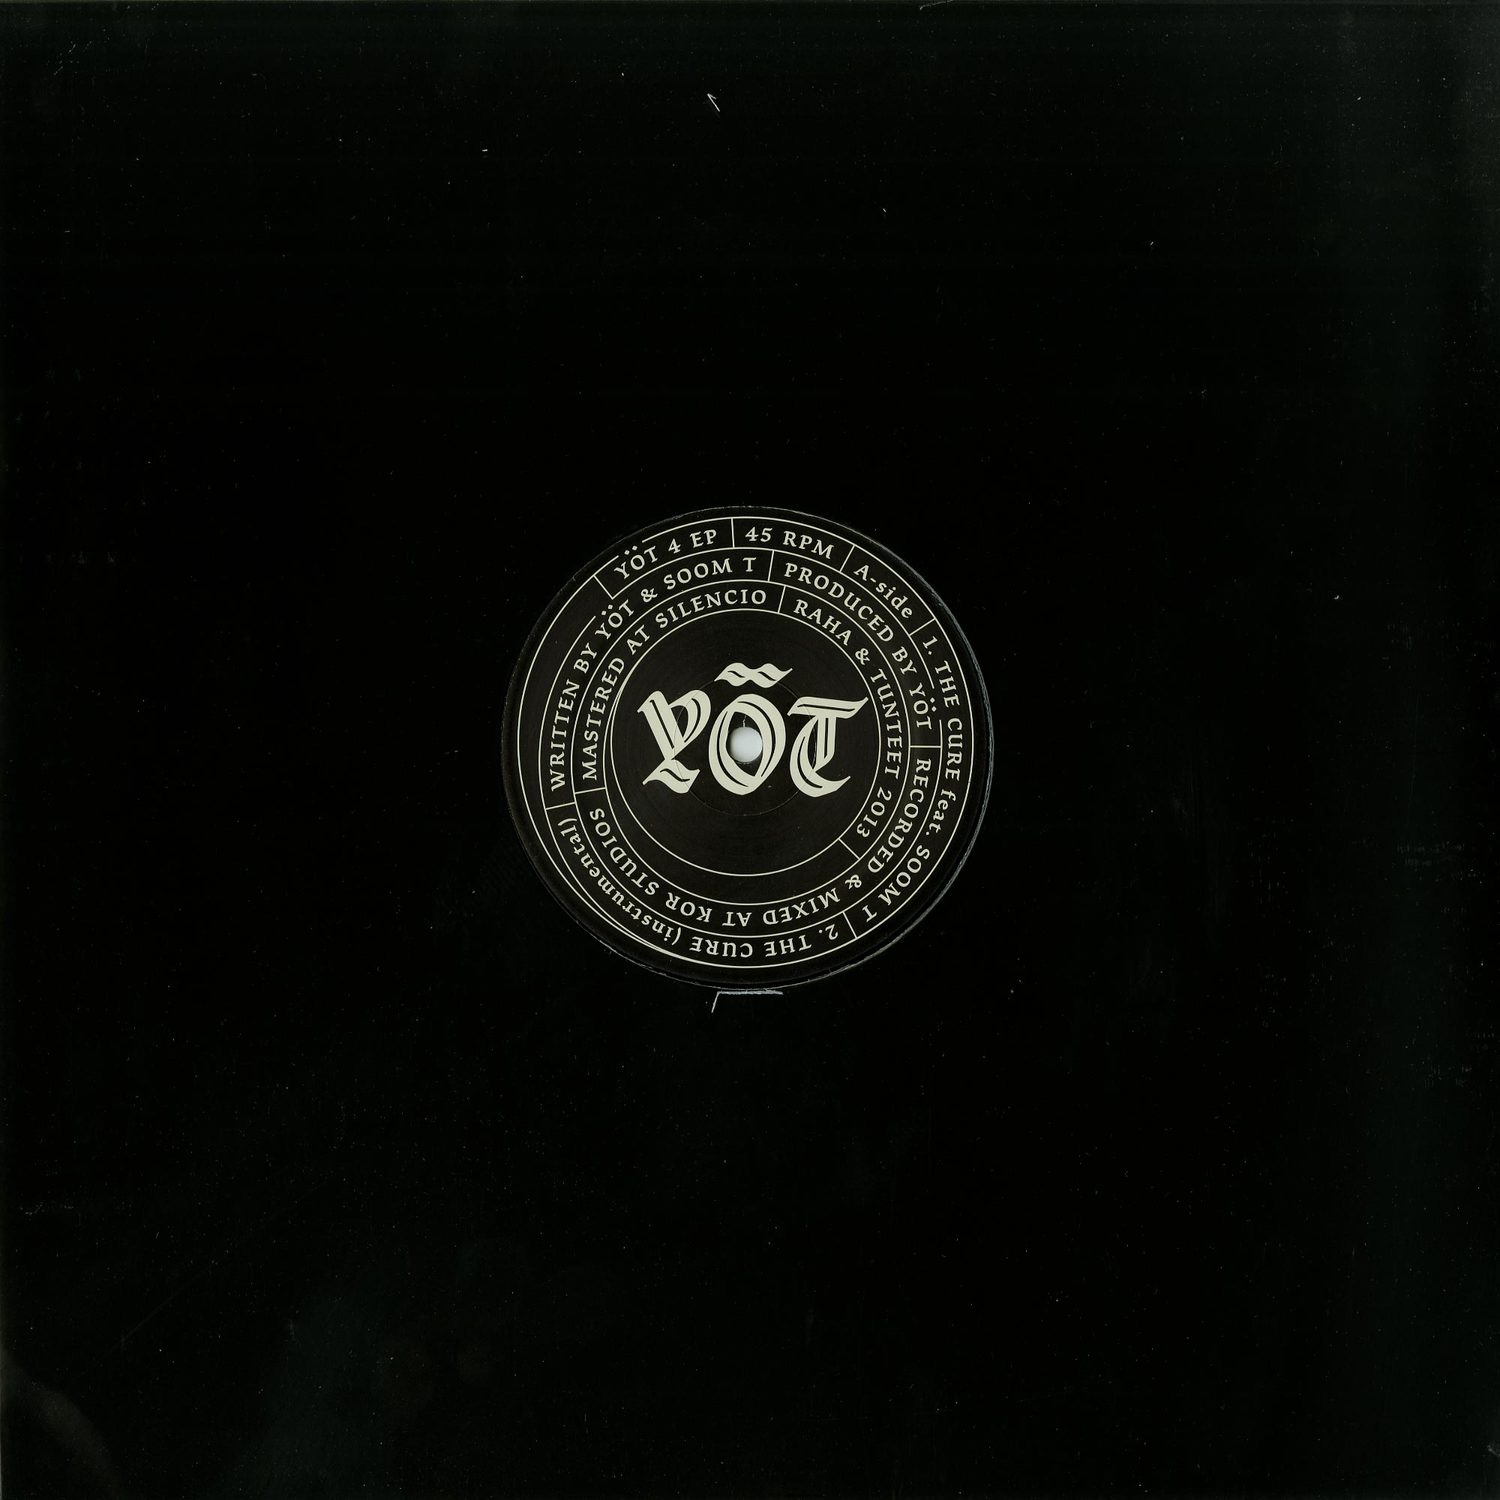 Yot & Soom T - YOT4 EP